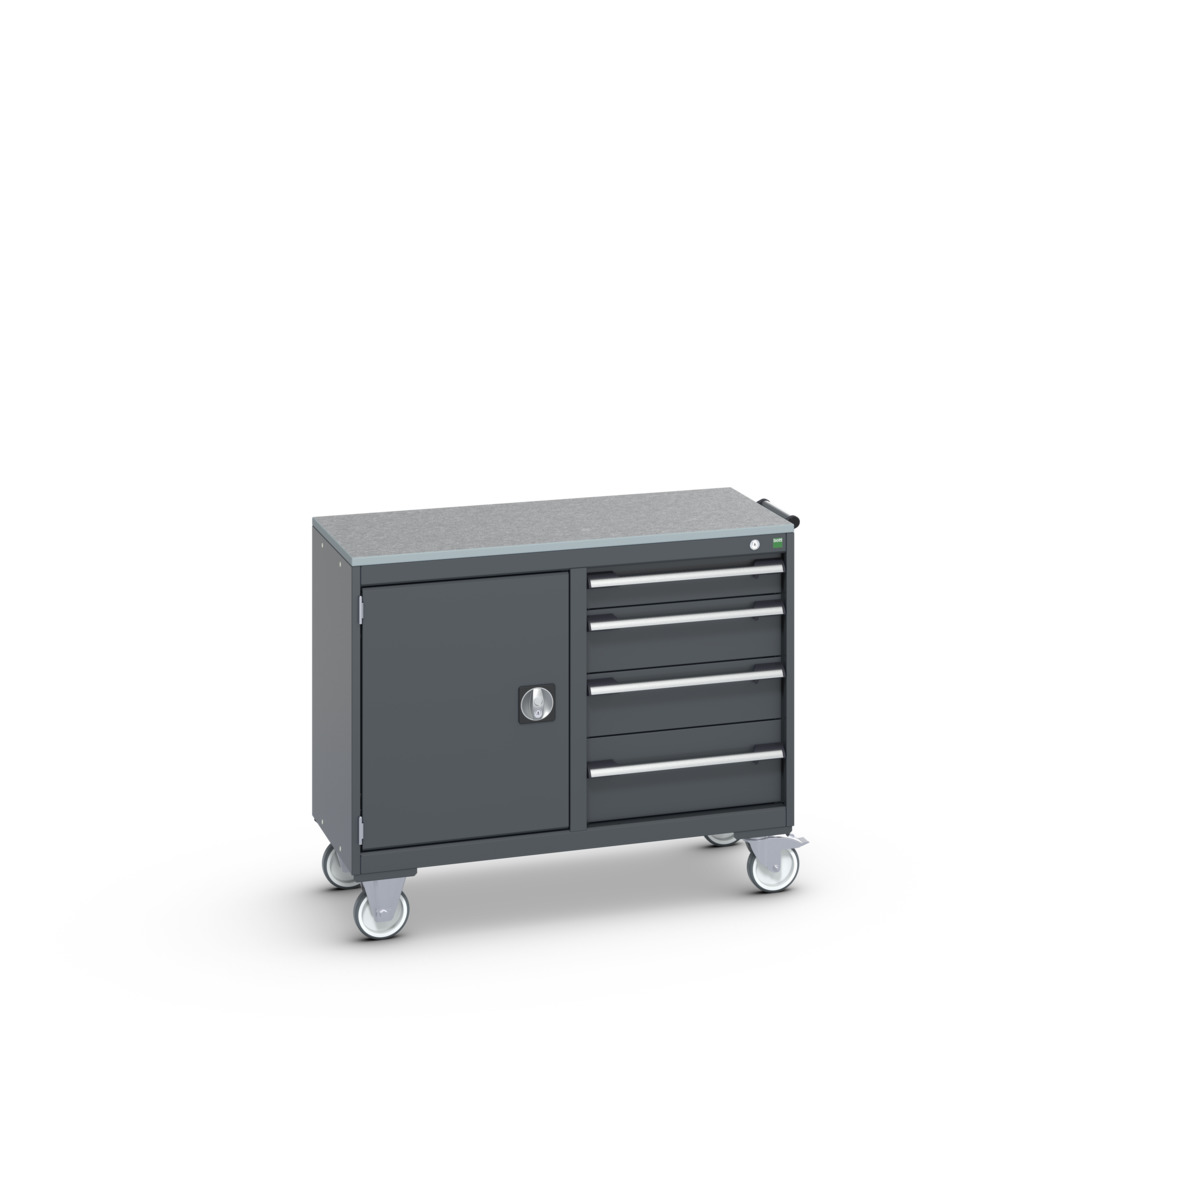 41006005.77V - cubio mobile cabinet 50/50 (lino)